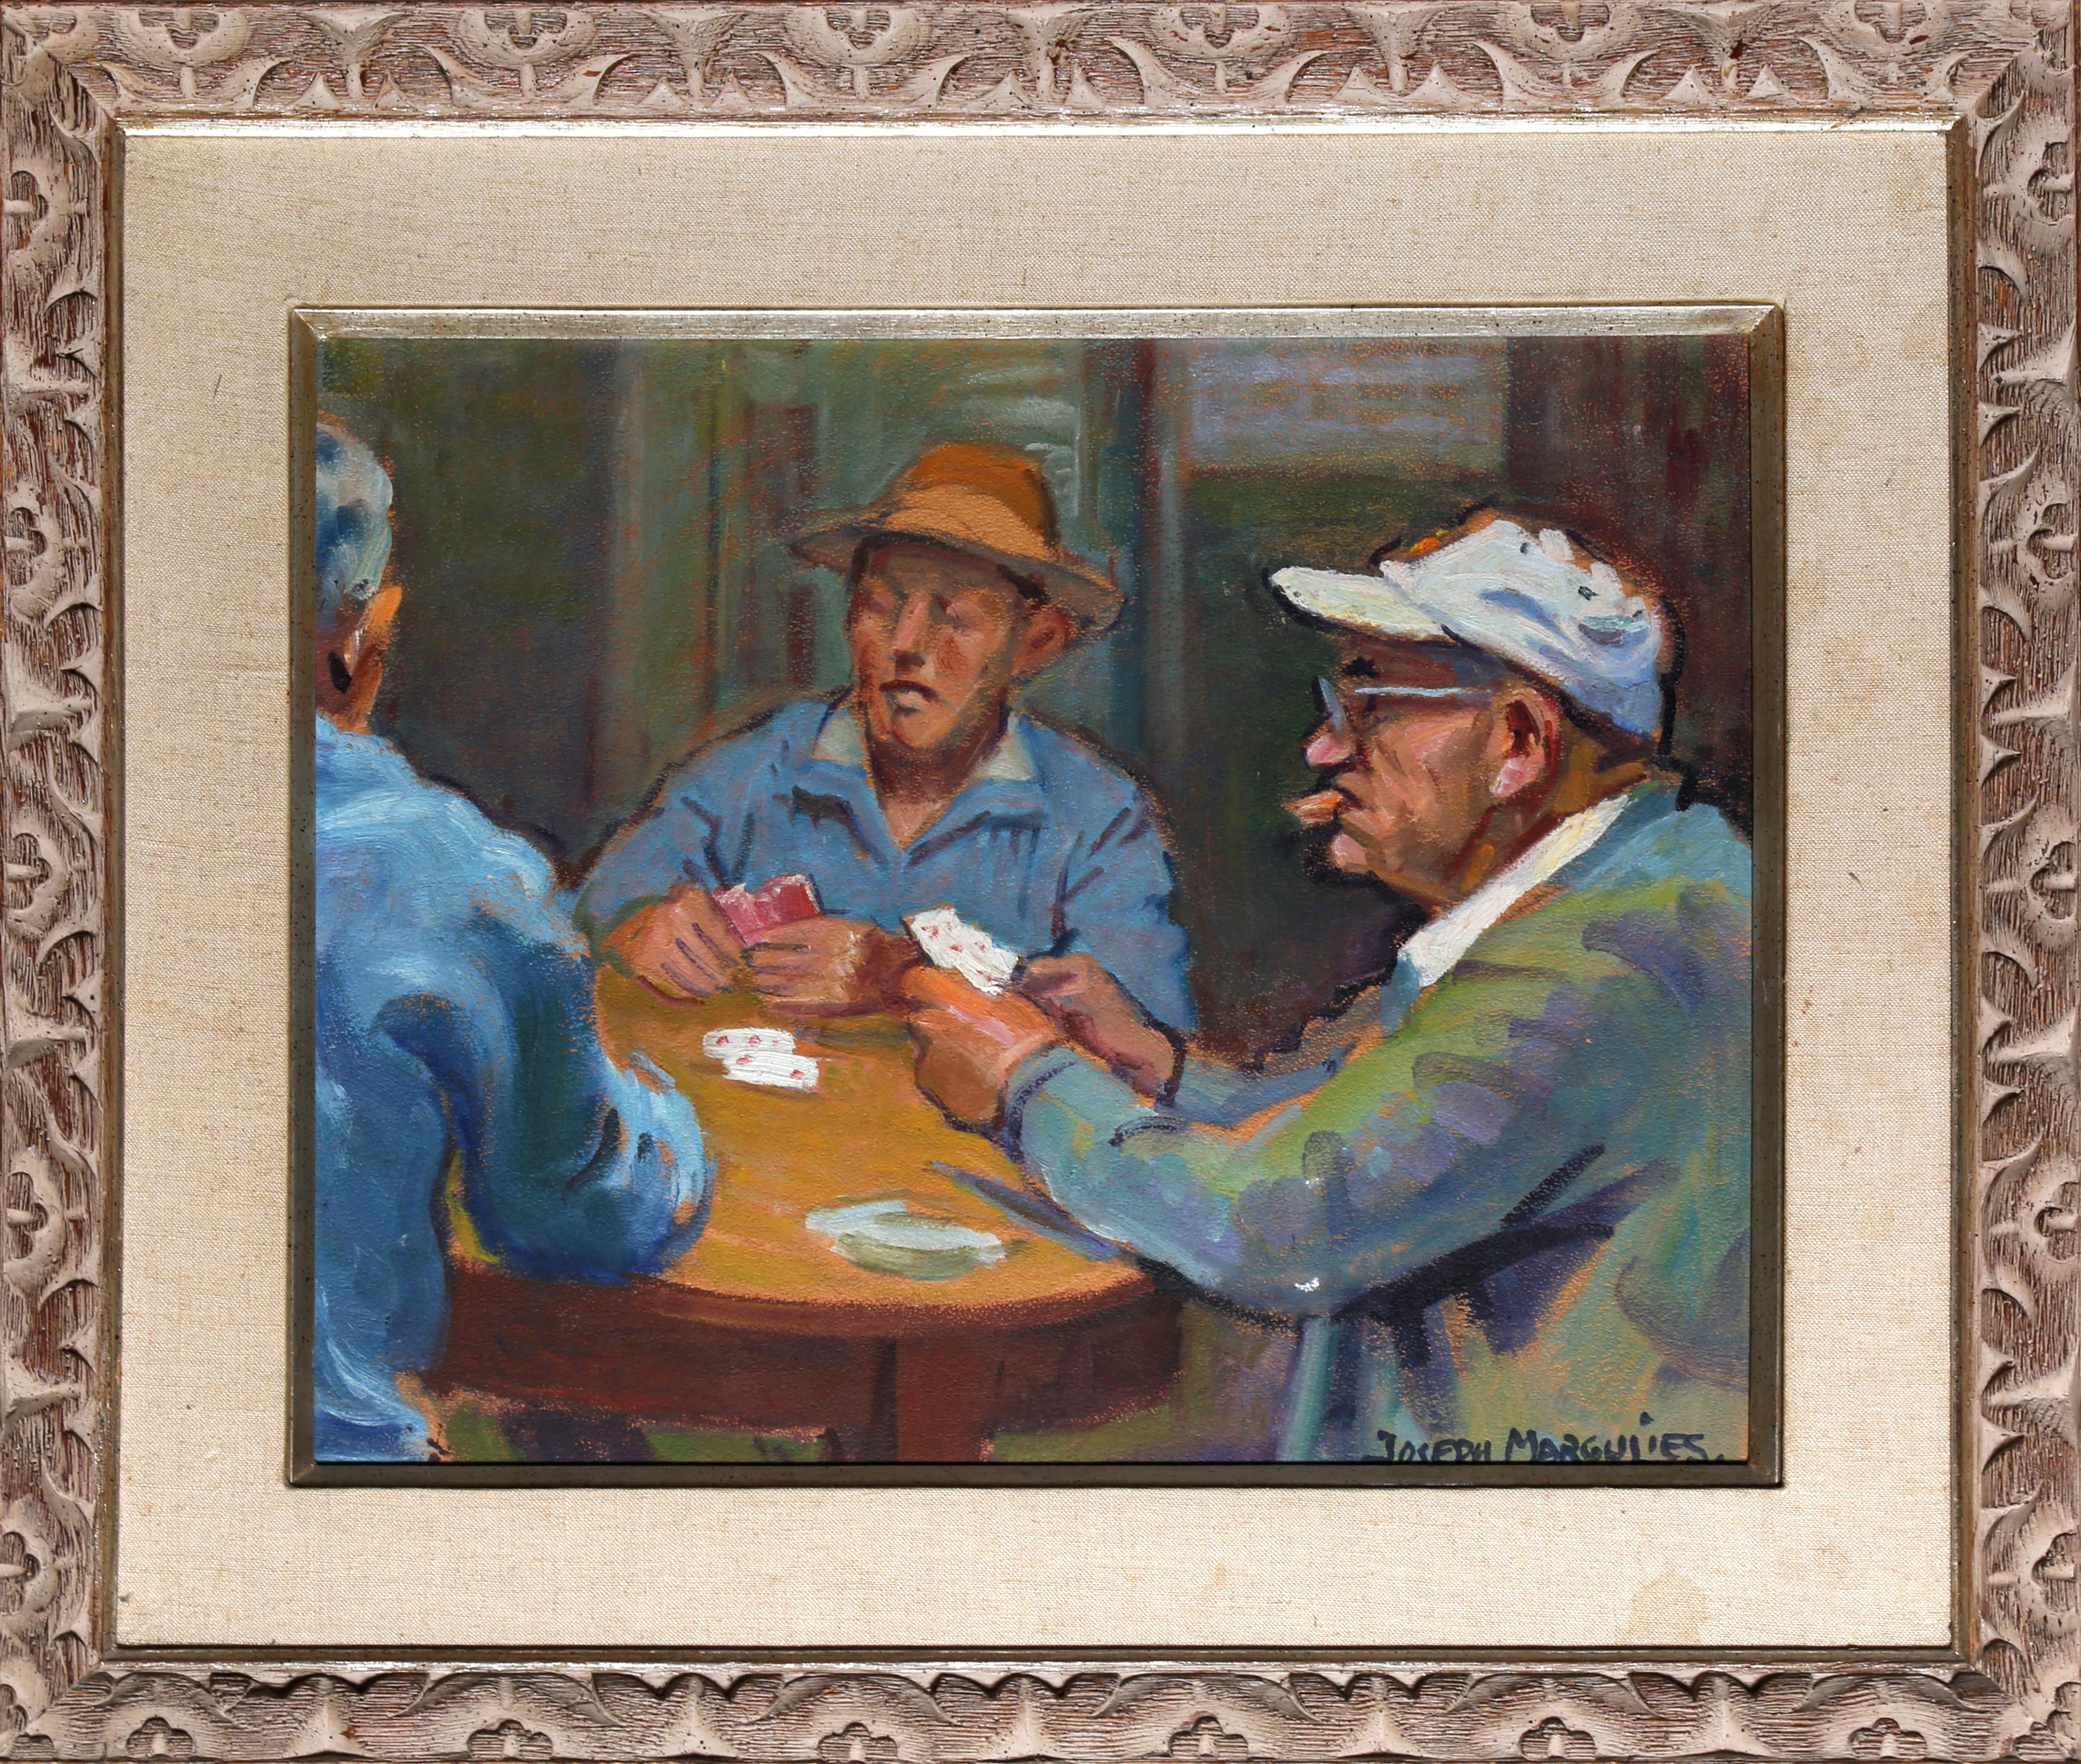 Peinture « Men Playing Cards » (hommes jouant aux cartes), de Joseph Margulies